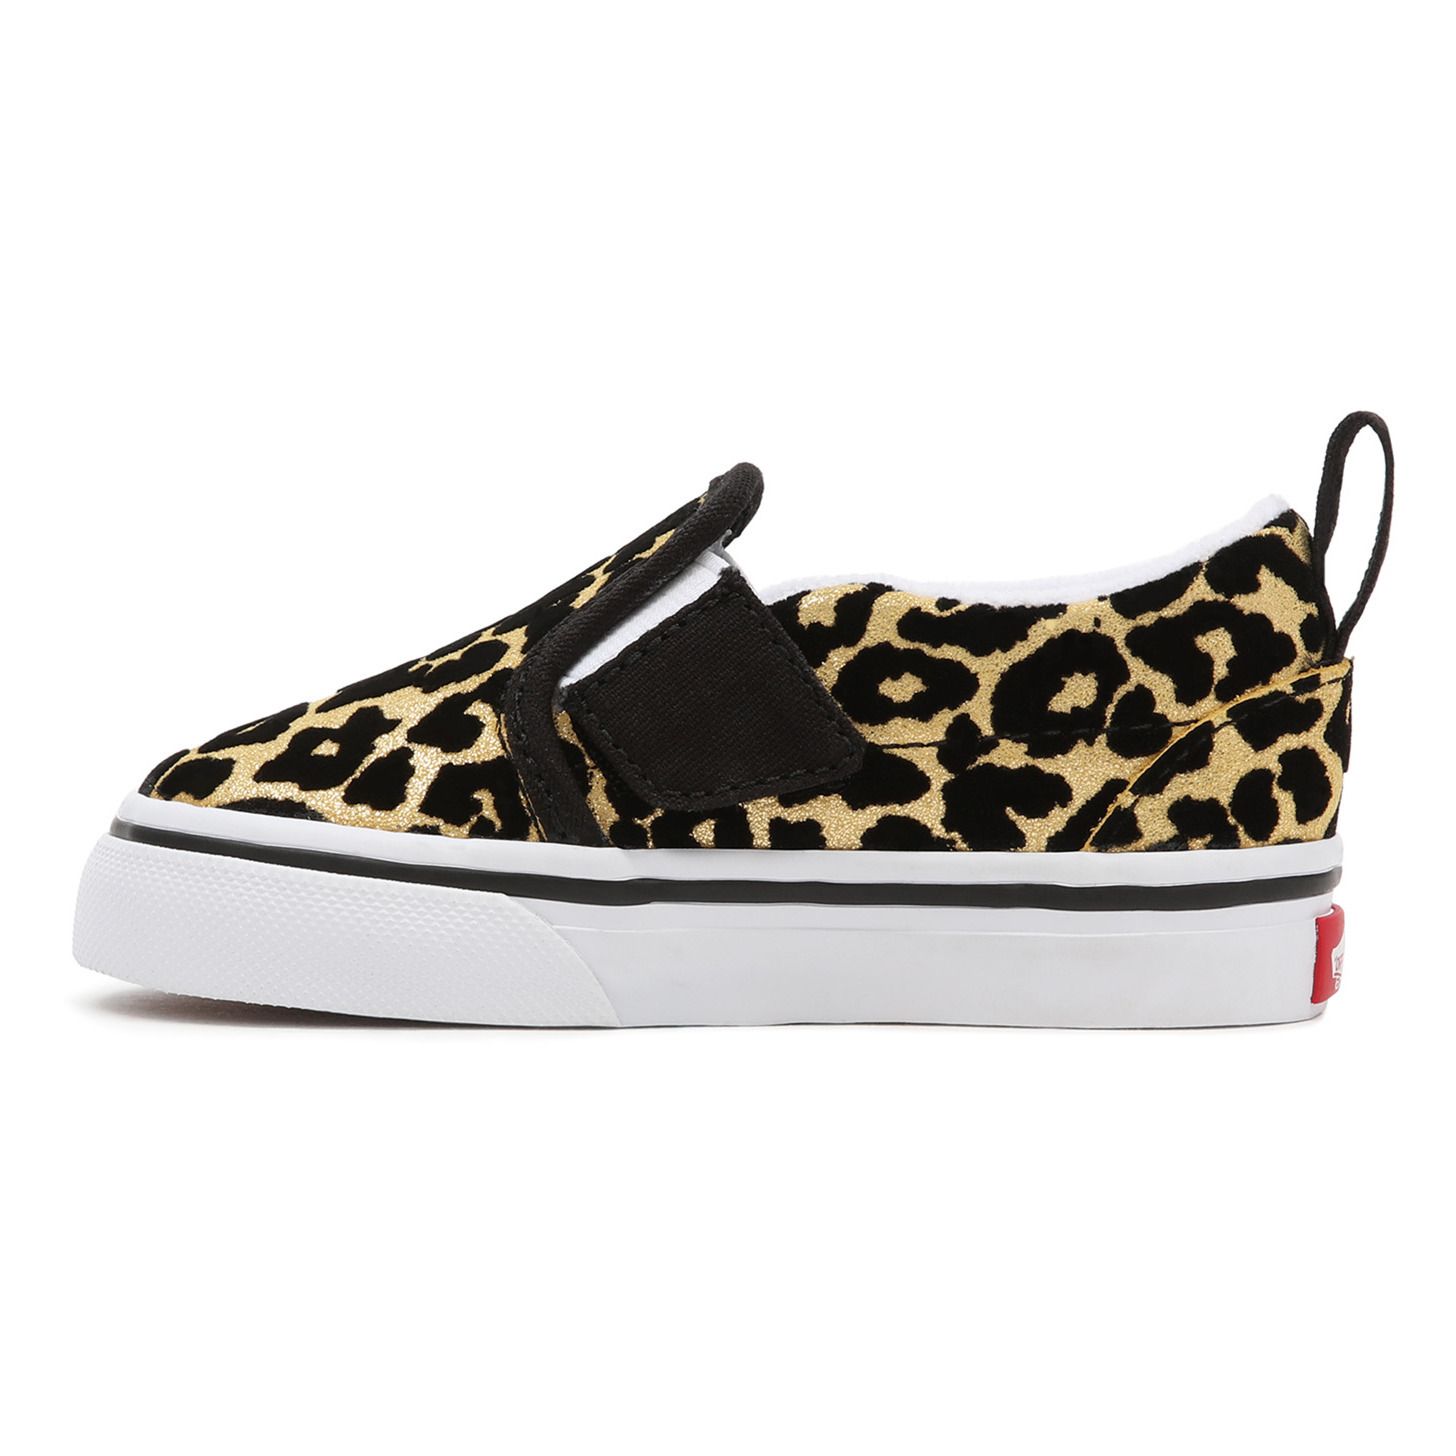 Vans - Leopard Print Velcro Slip-On Shoes - Black | Smallable